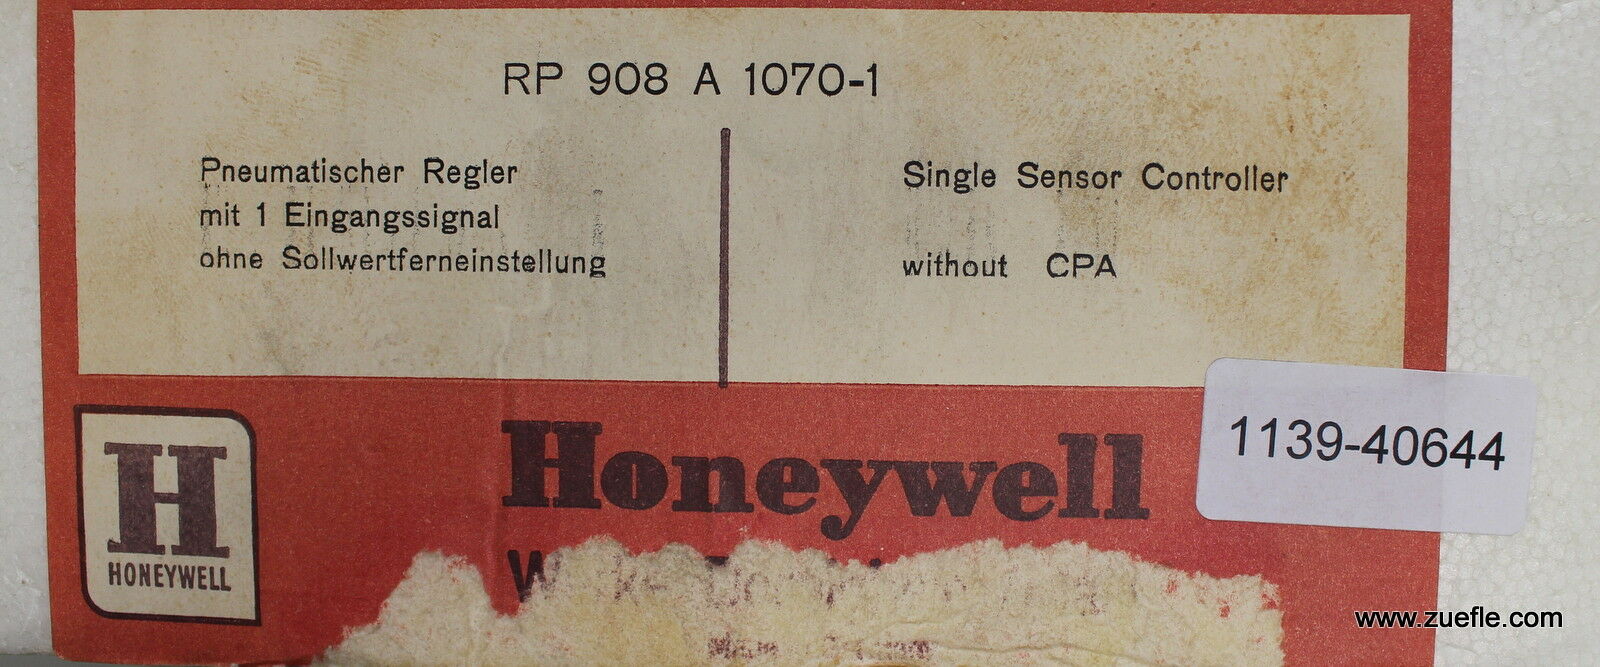 HONEYWELL Pneumatischer Regler single sensor controller without CPA RP 908 A 107